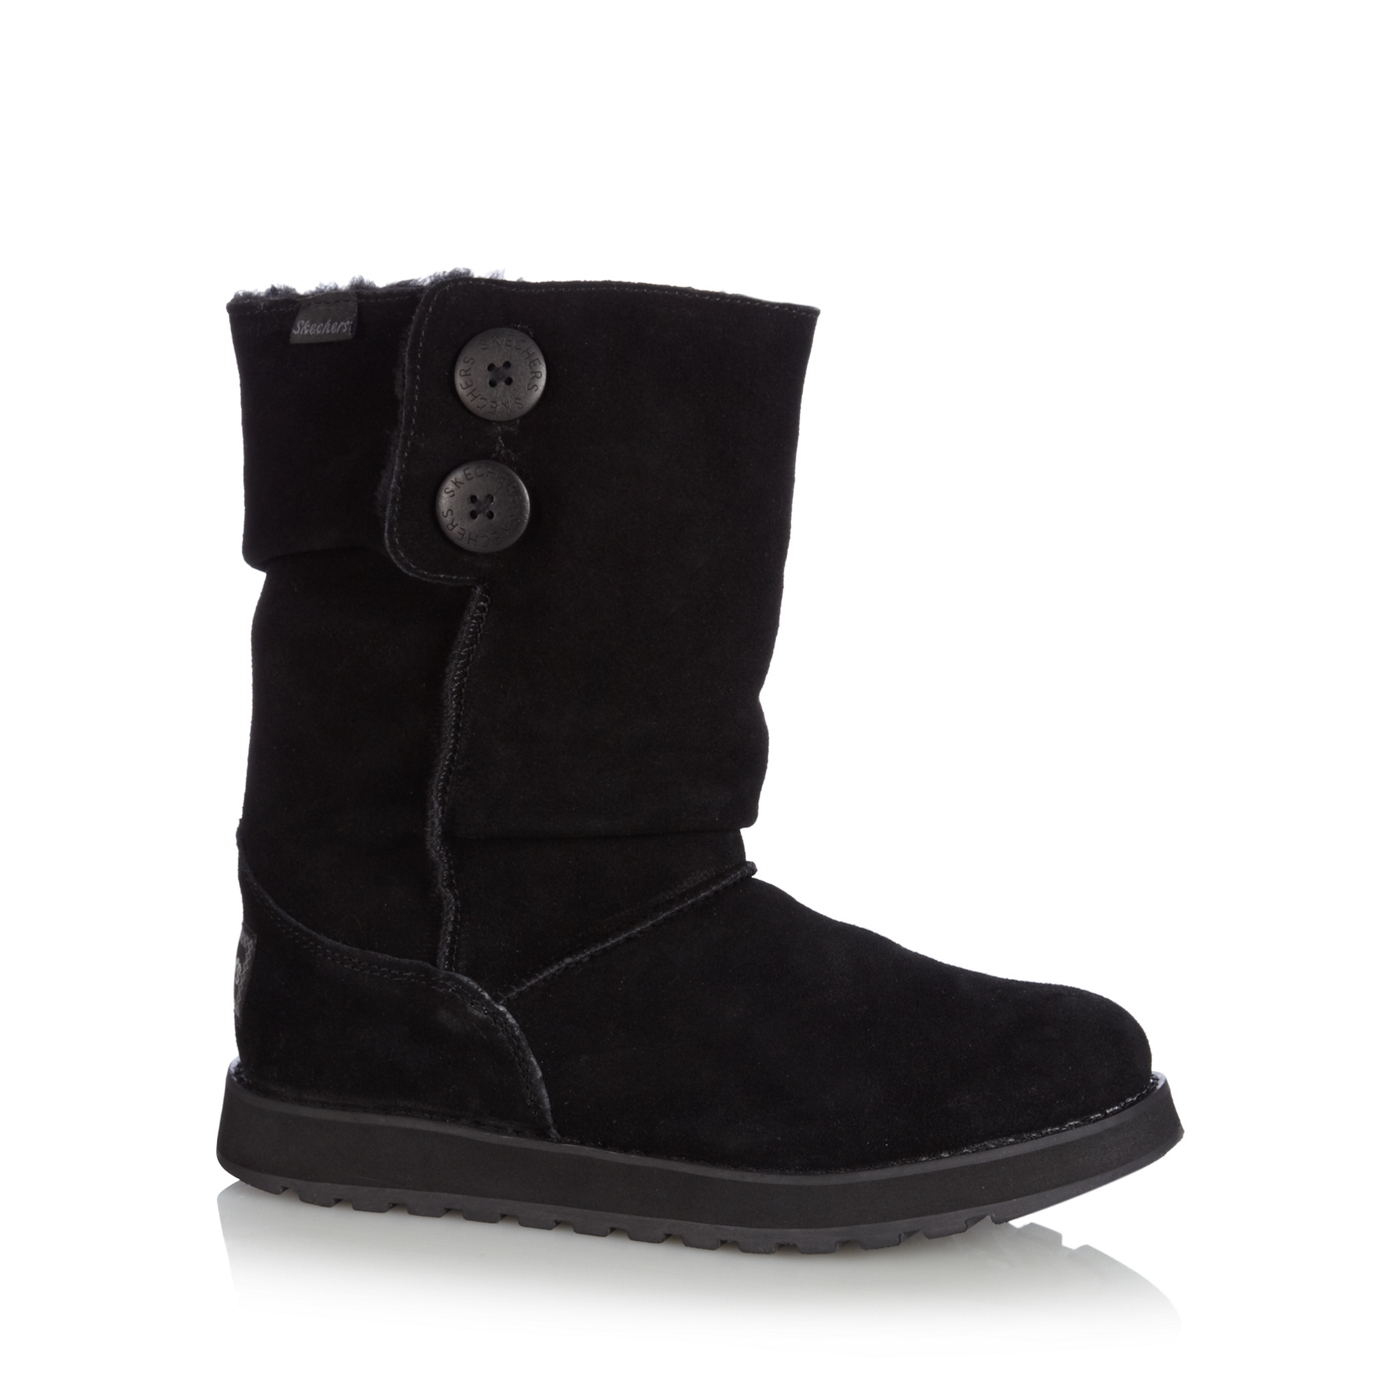 Skechers Black suede faux fur mid calf boots